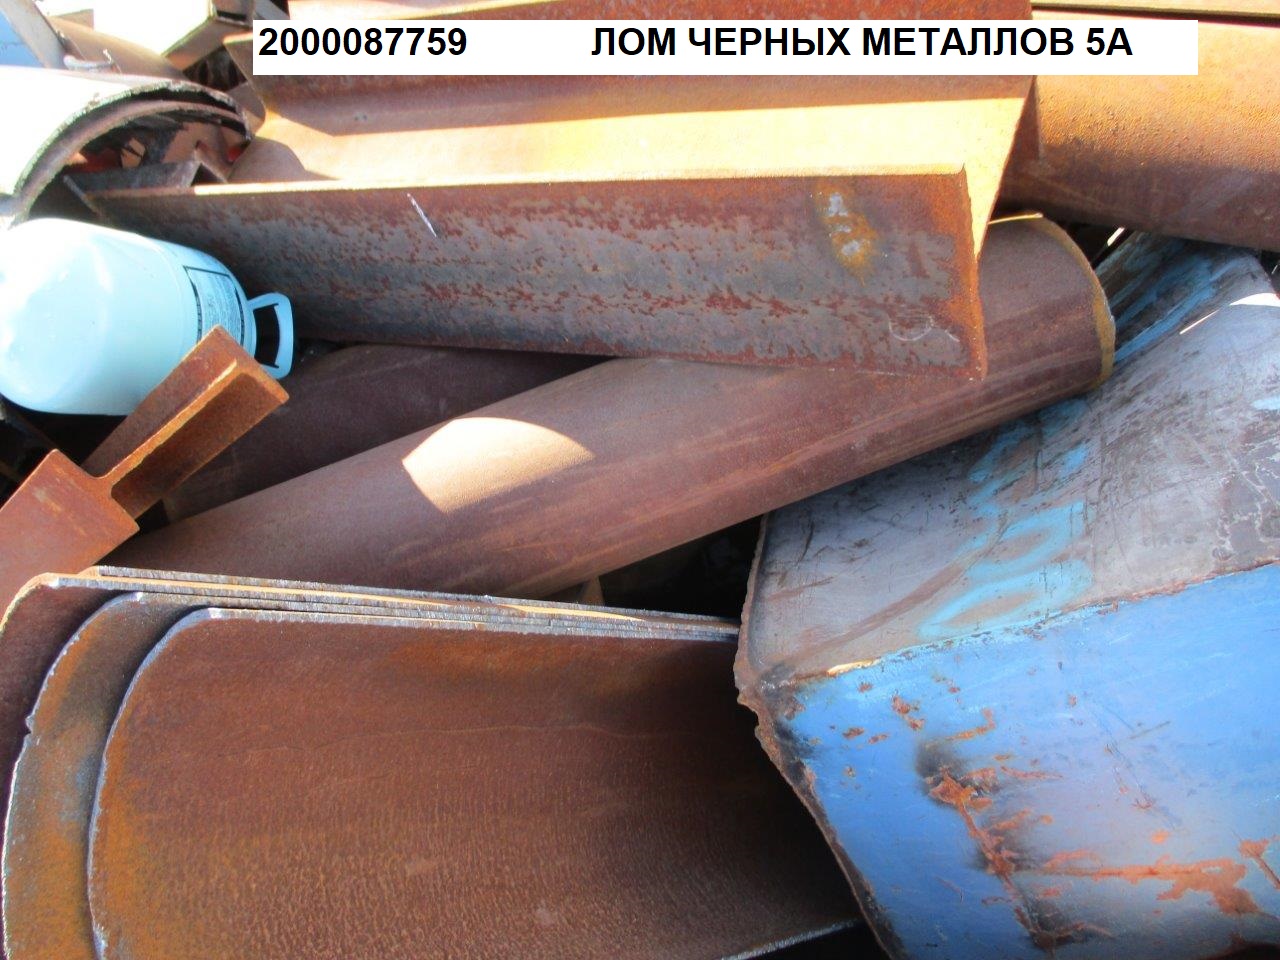 168056 - Реализация лома черных металлов (16А, 5А и 17А) ООО "НевРСС"-4